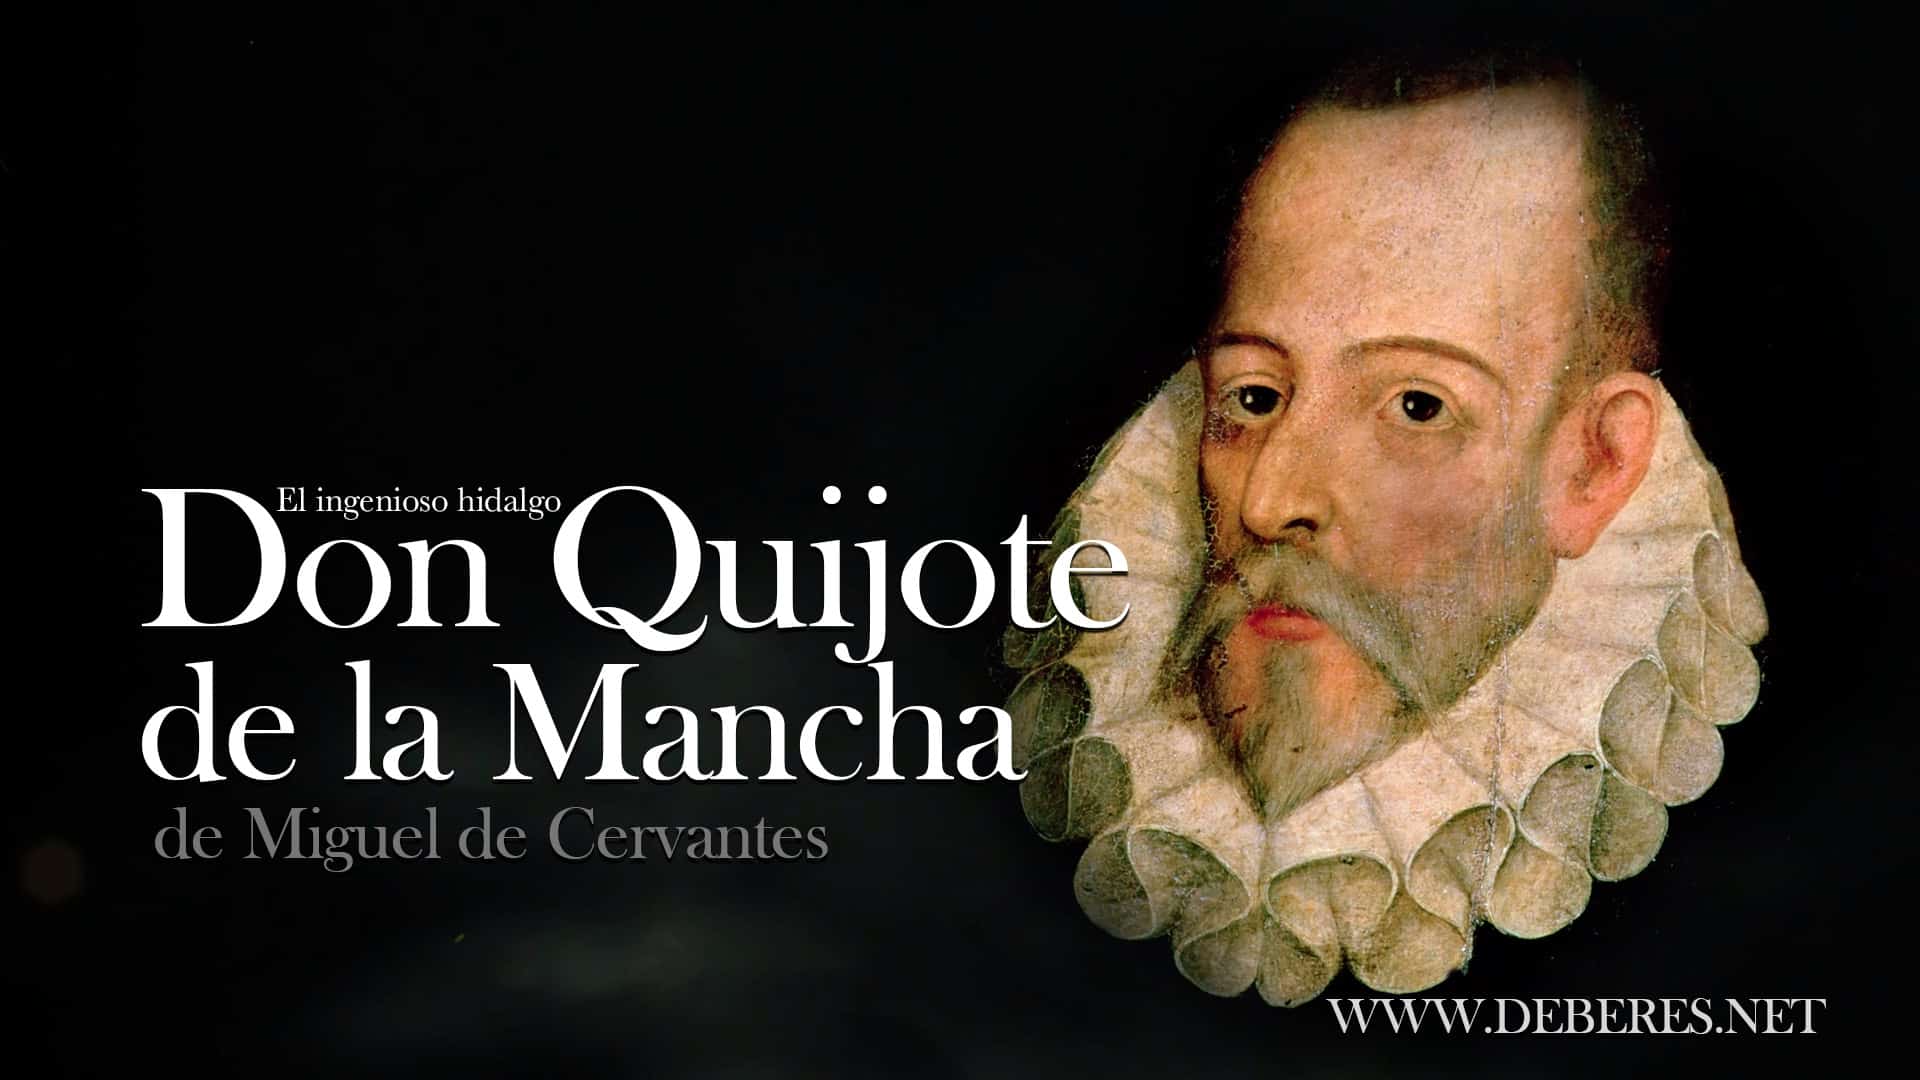 El Quijote de Cervantes